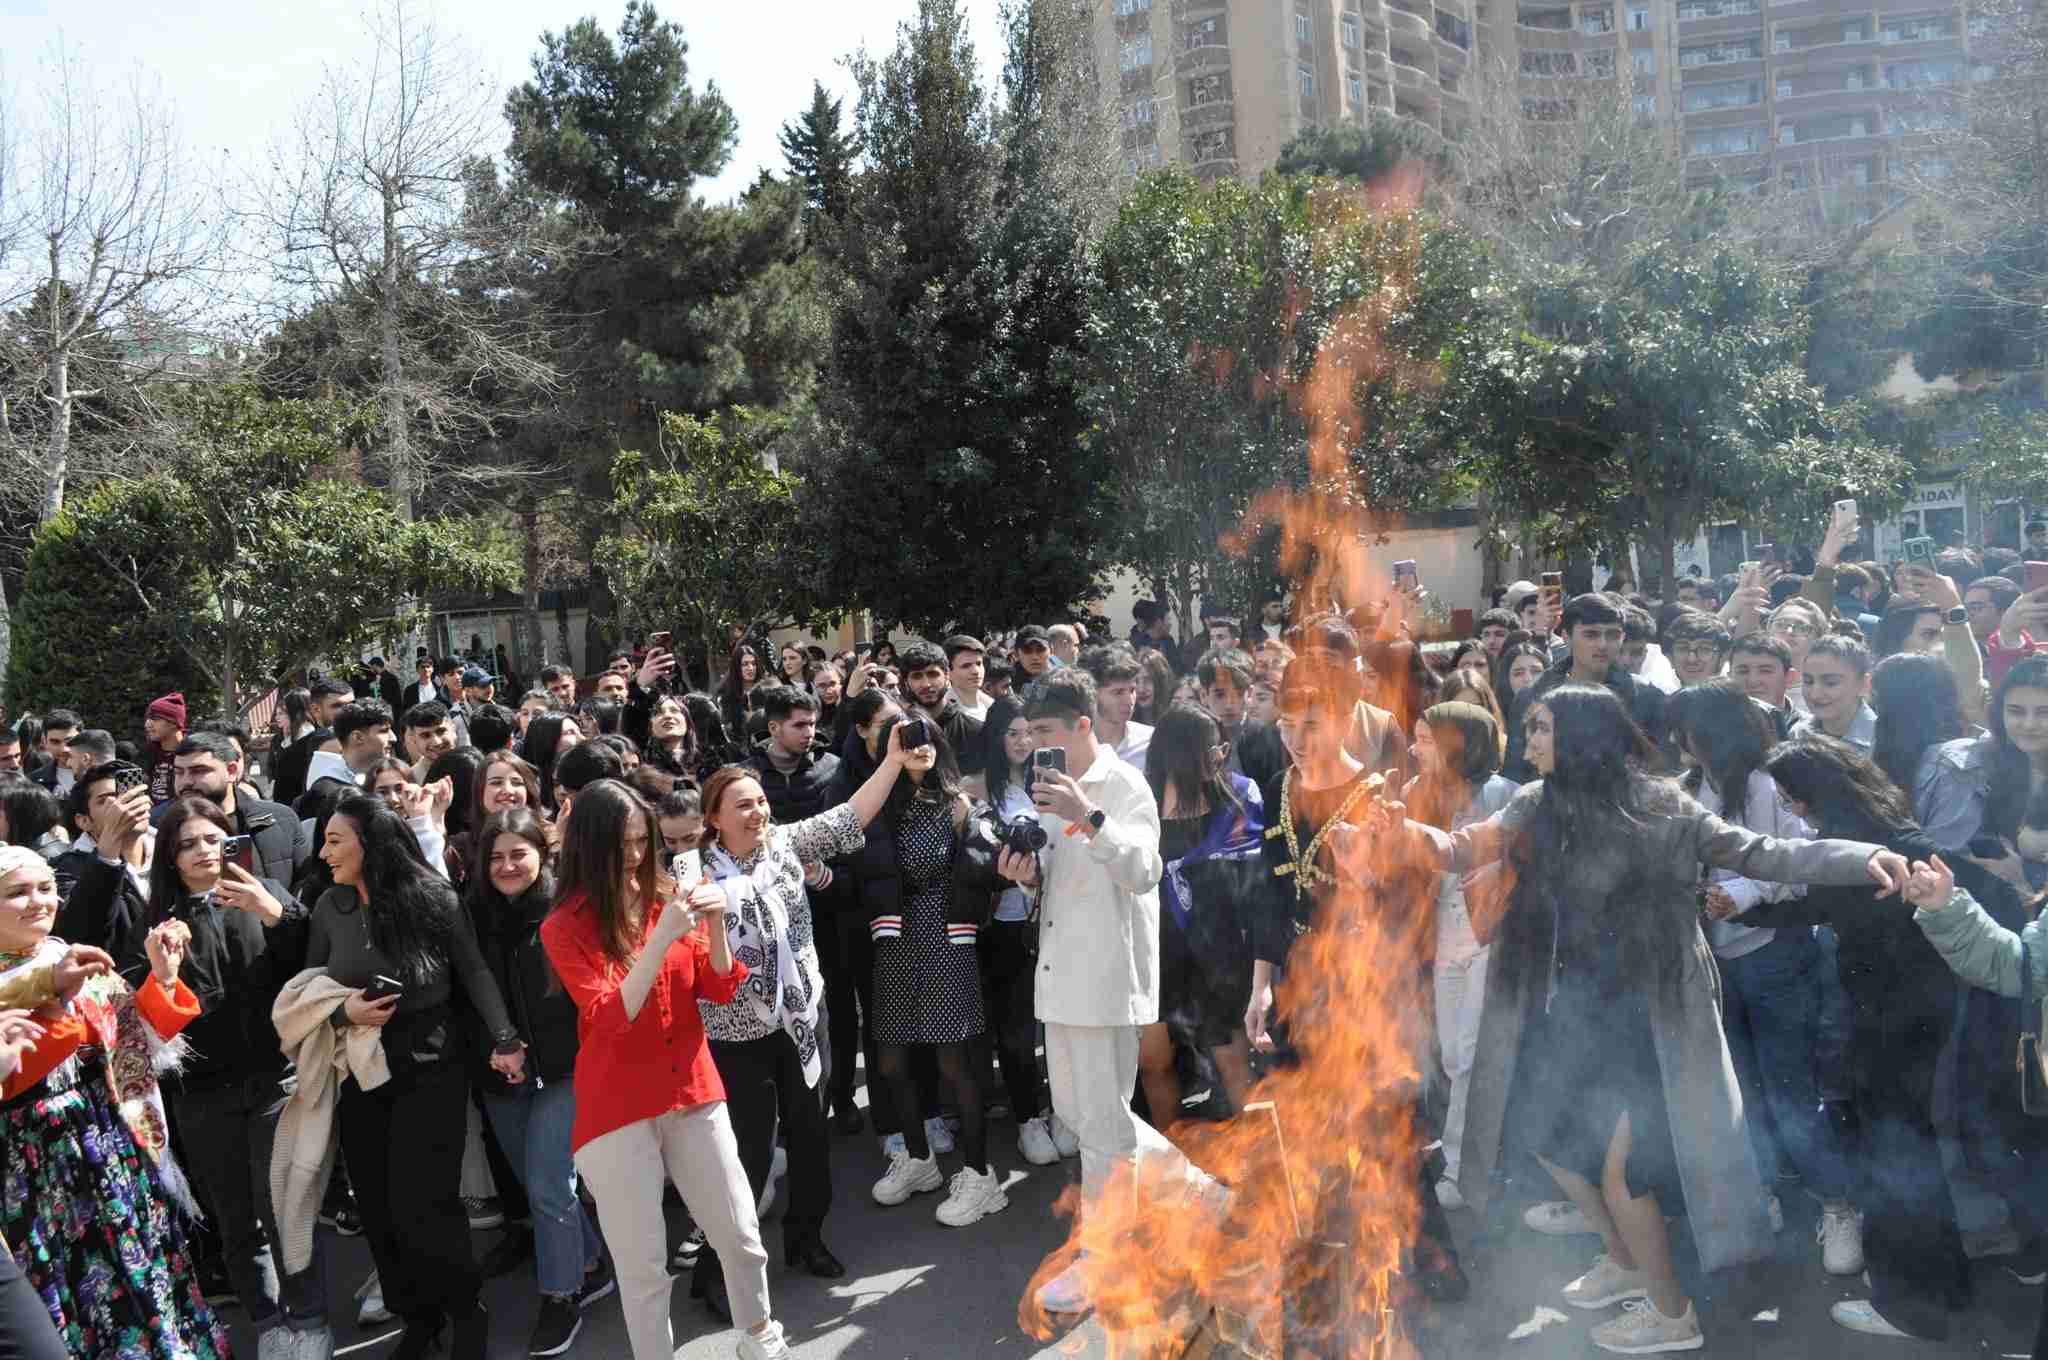 Odlar Yurdu Universitetində Novruz bayramı ilə əlaqədar şənlik təşkil olunmuşdur